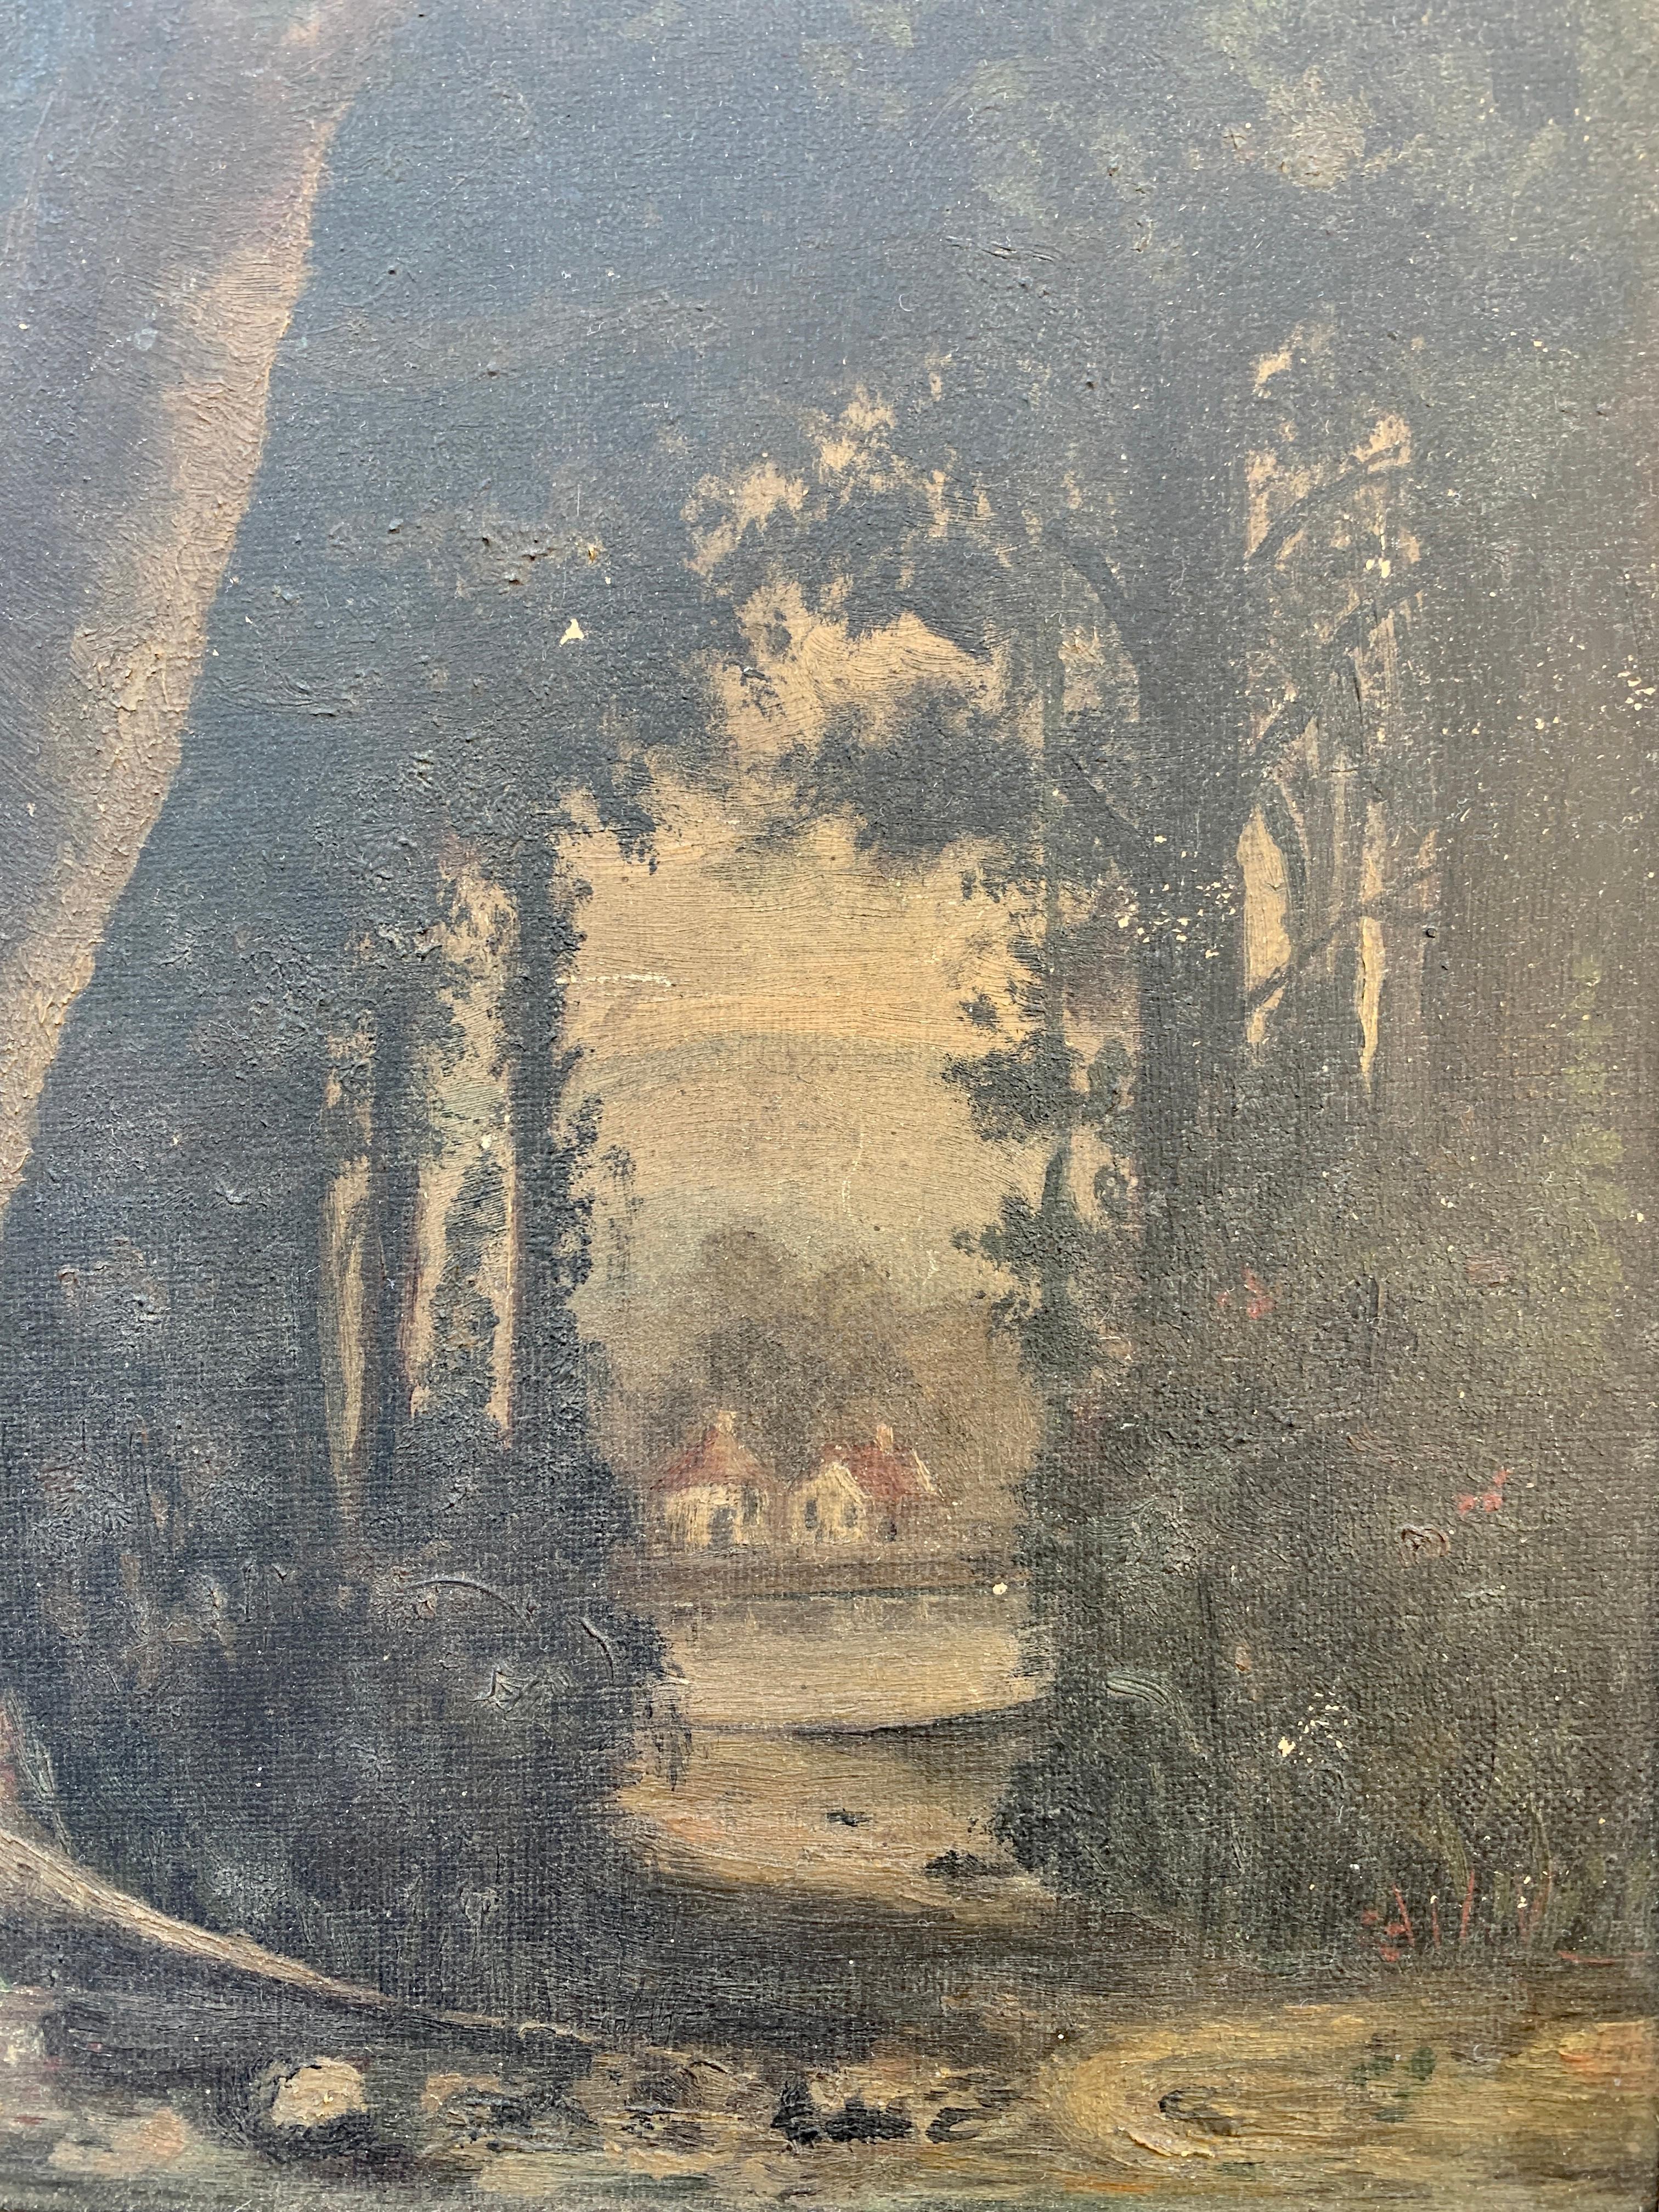 Magnifique peinture ancienne à l'huile sur toile, encadrée de bois doré, représentant un paysage forestier.

États-Unis, fin du 19e siècle

Dimensions : 9,75 